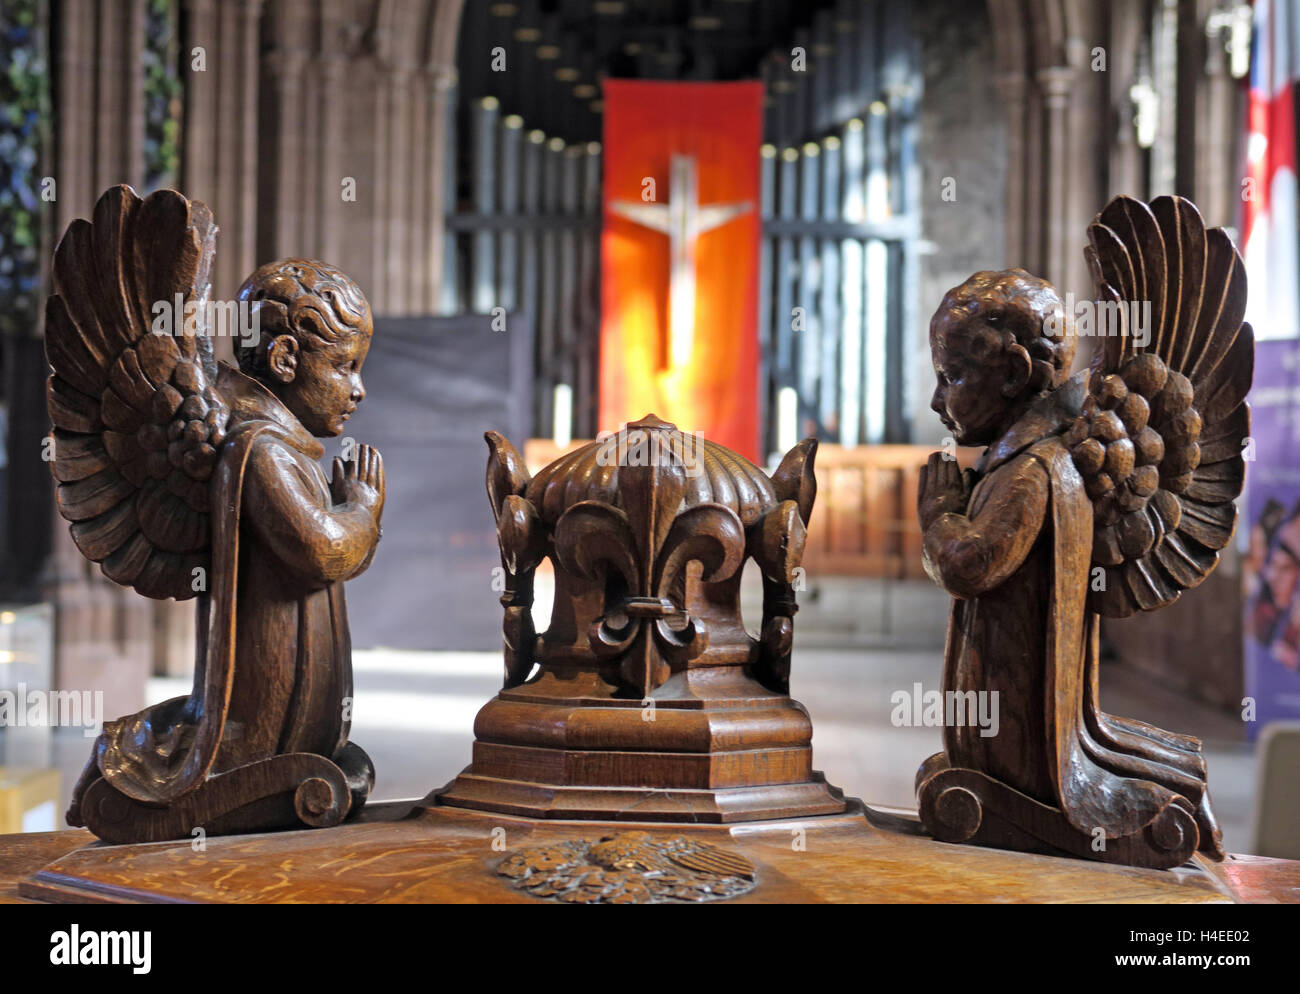 Crocifisso e un organo a canne dietro font angeli,Cattedrale di Manchester, Inghilterra, Regno Unito Foto Stock